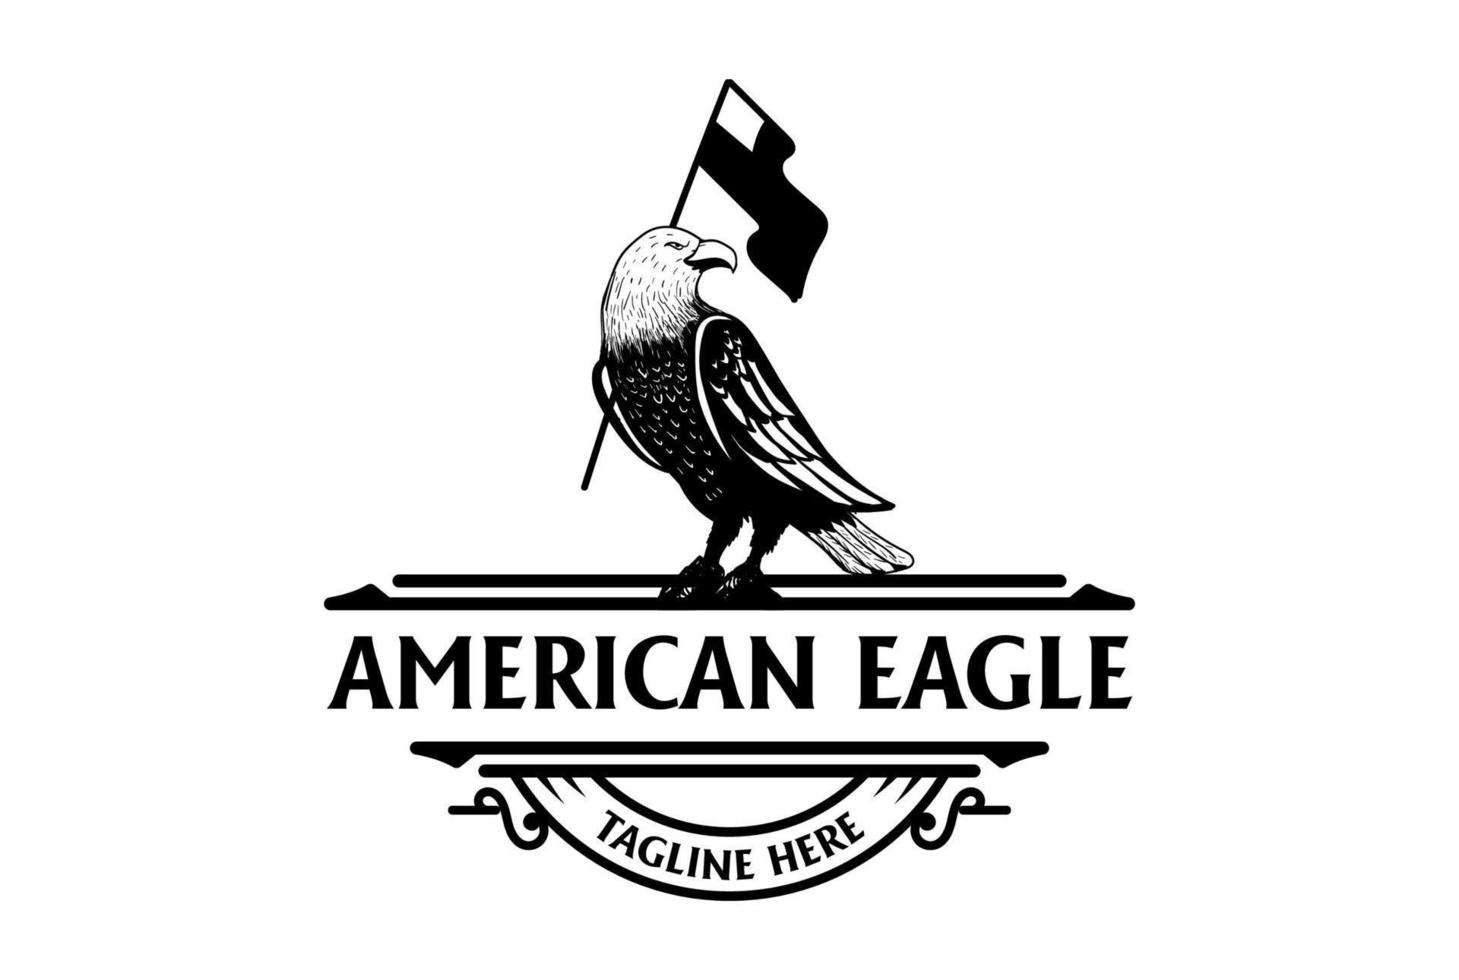 Retro Vintage American Eagle Falcon Hawk Bird with Flag Badge Emblem Logo Design vector